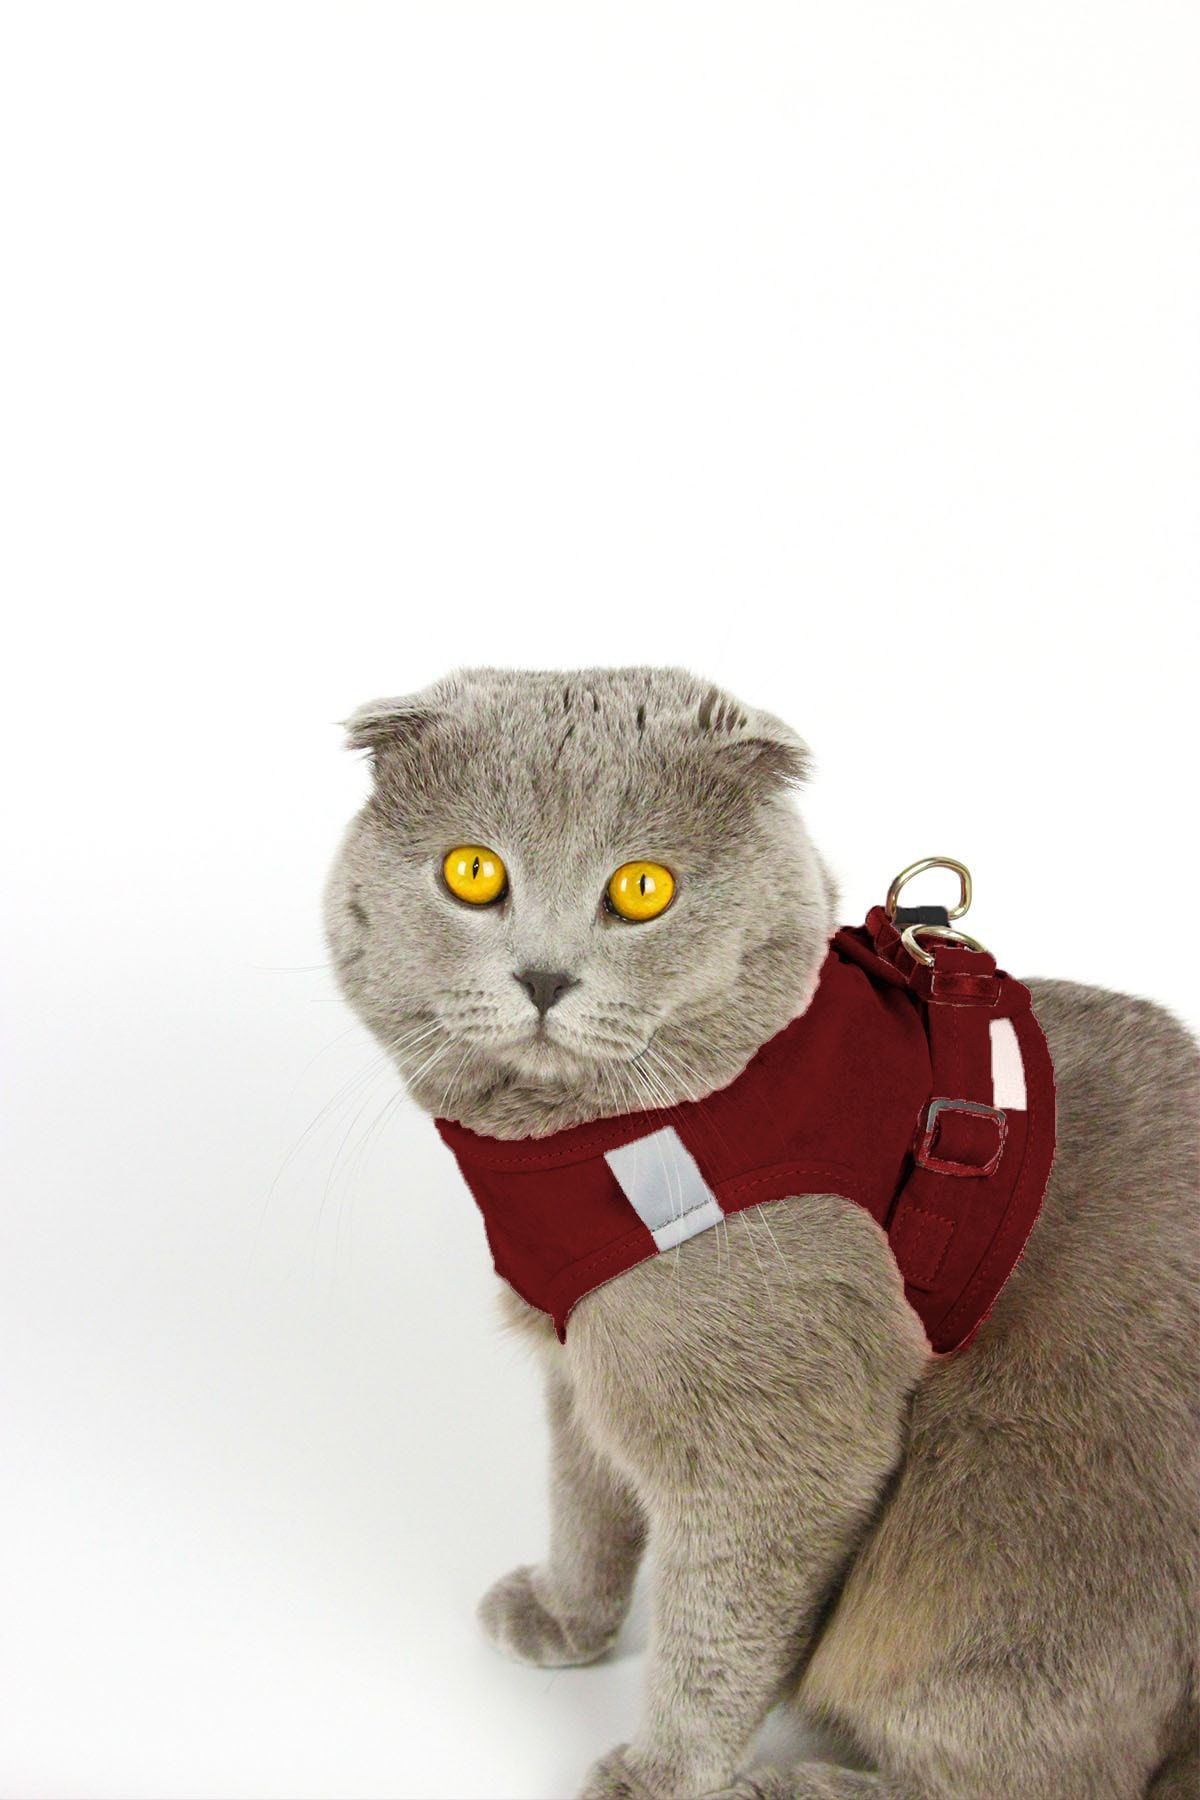 Petköy Kedi Gezdirme Tasması - Kedi Tasması Göğüs Tasma Seti Yumuşak Süet Bordo Renk